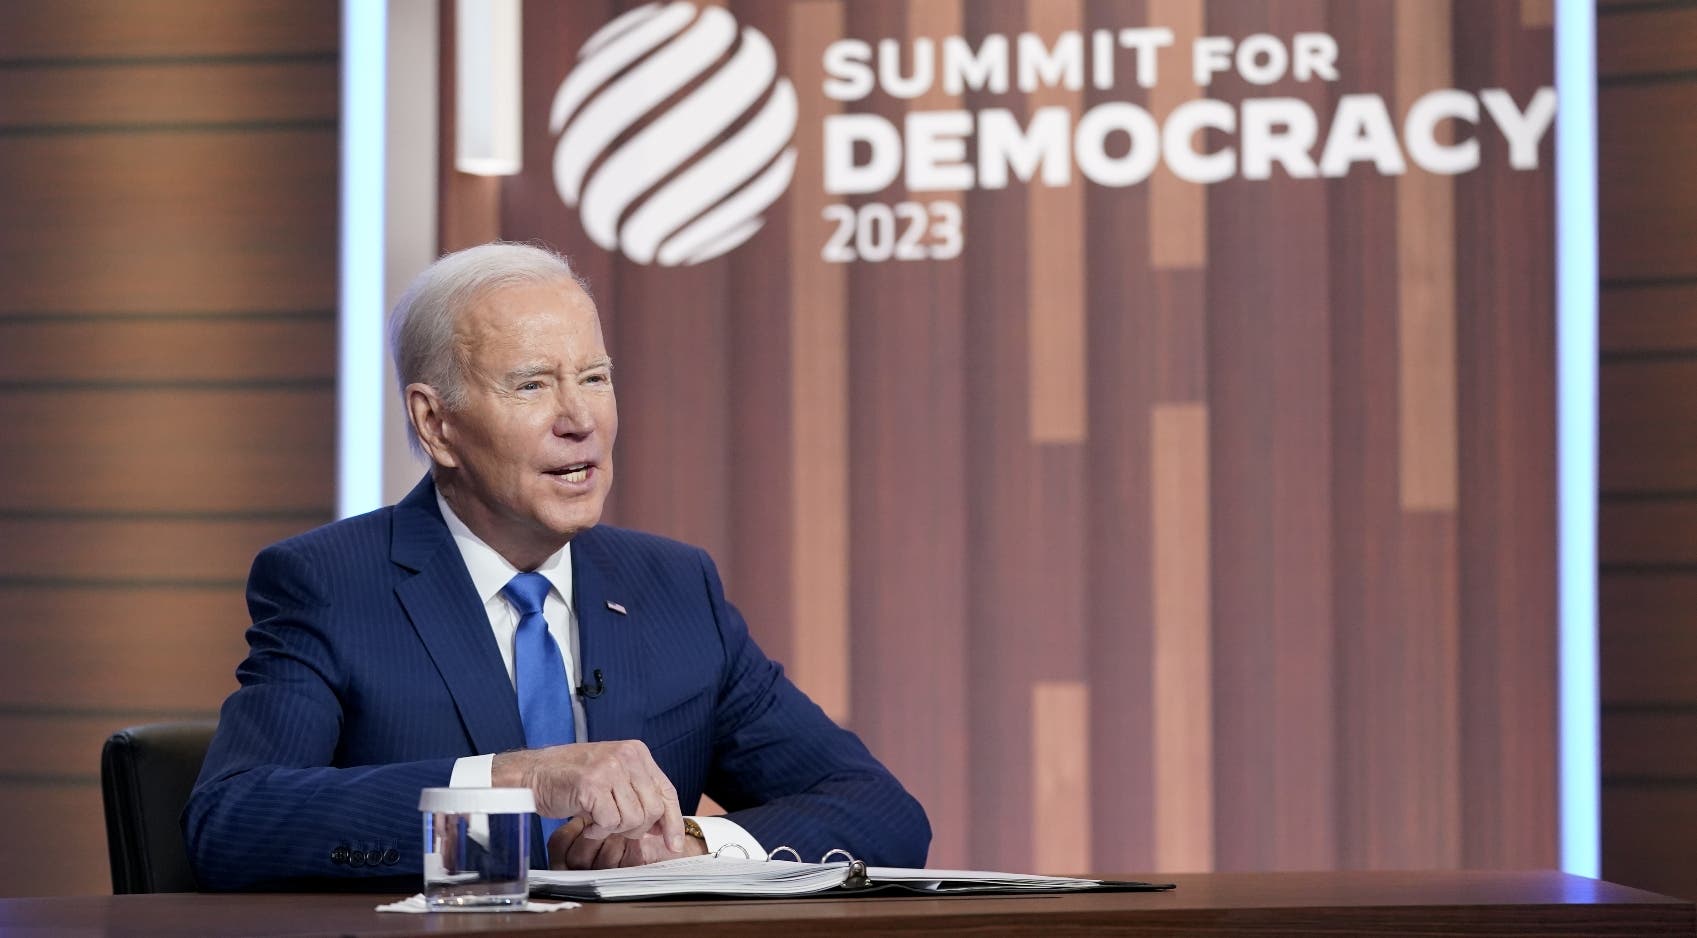 Joe Biden elogia lucha contra corrupción que se lleva en República Dominicana